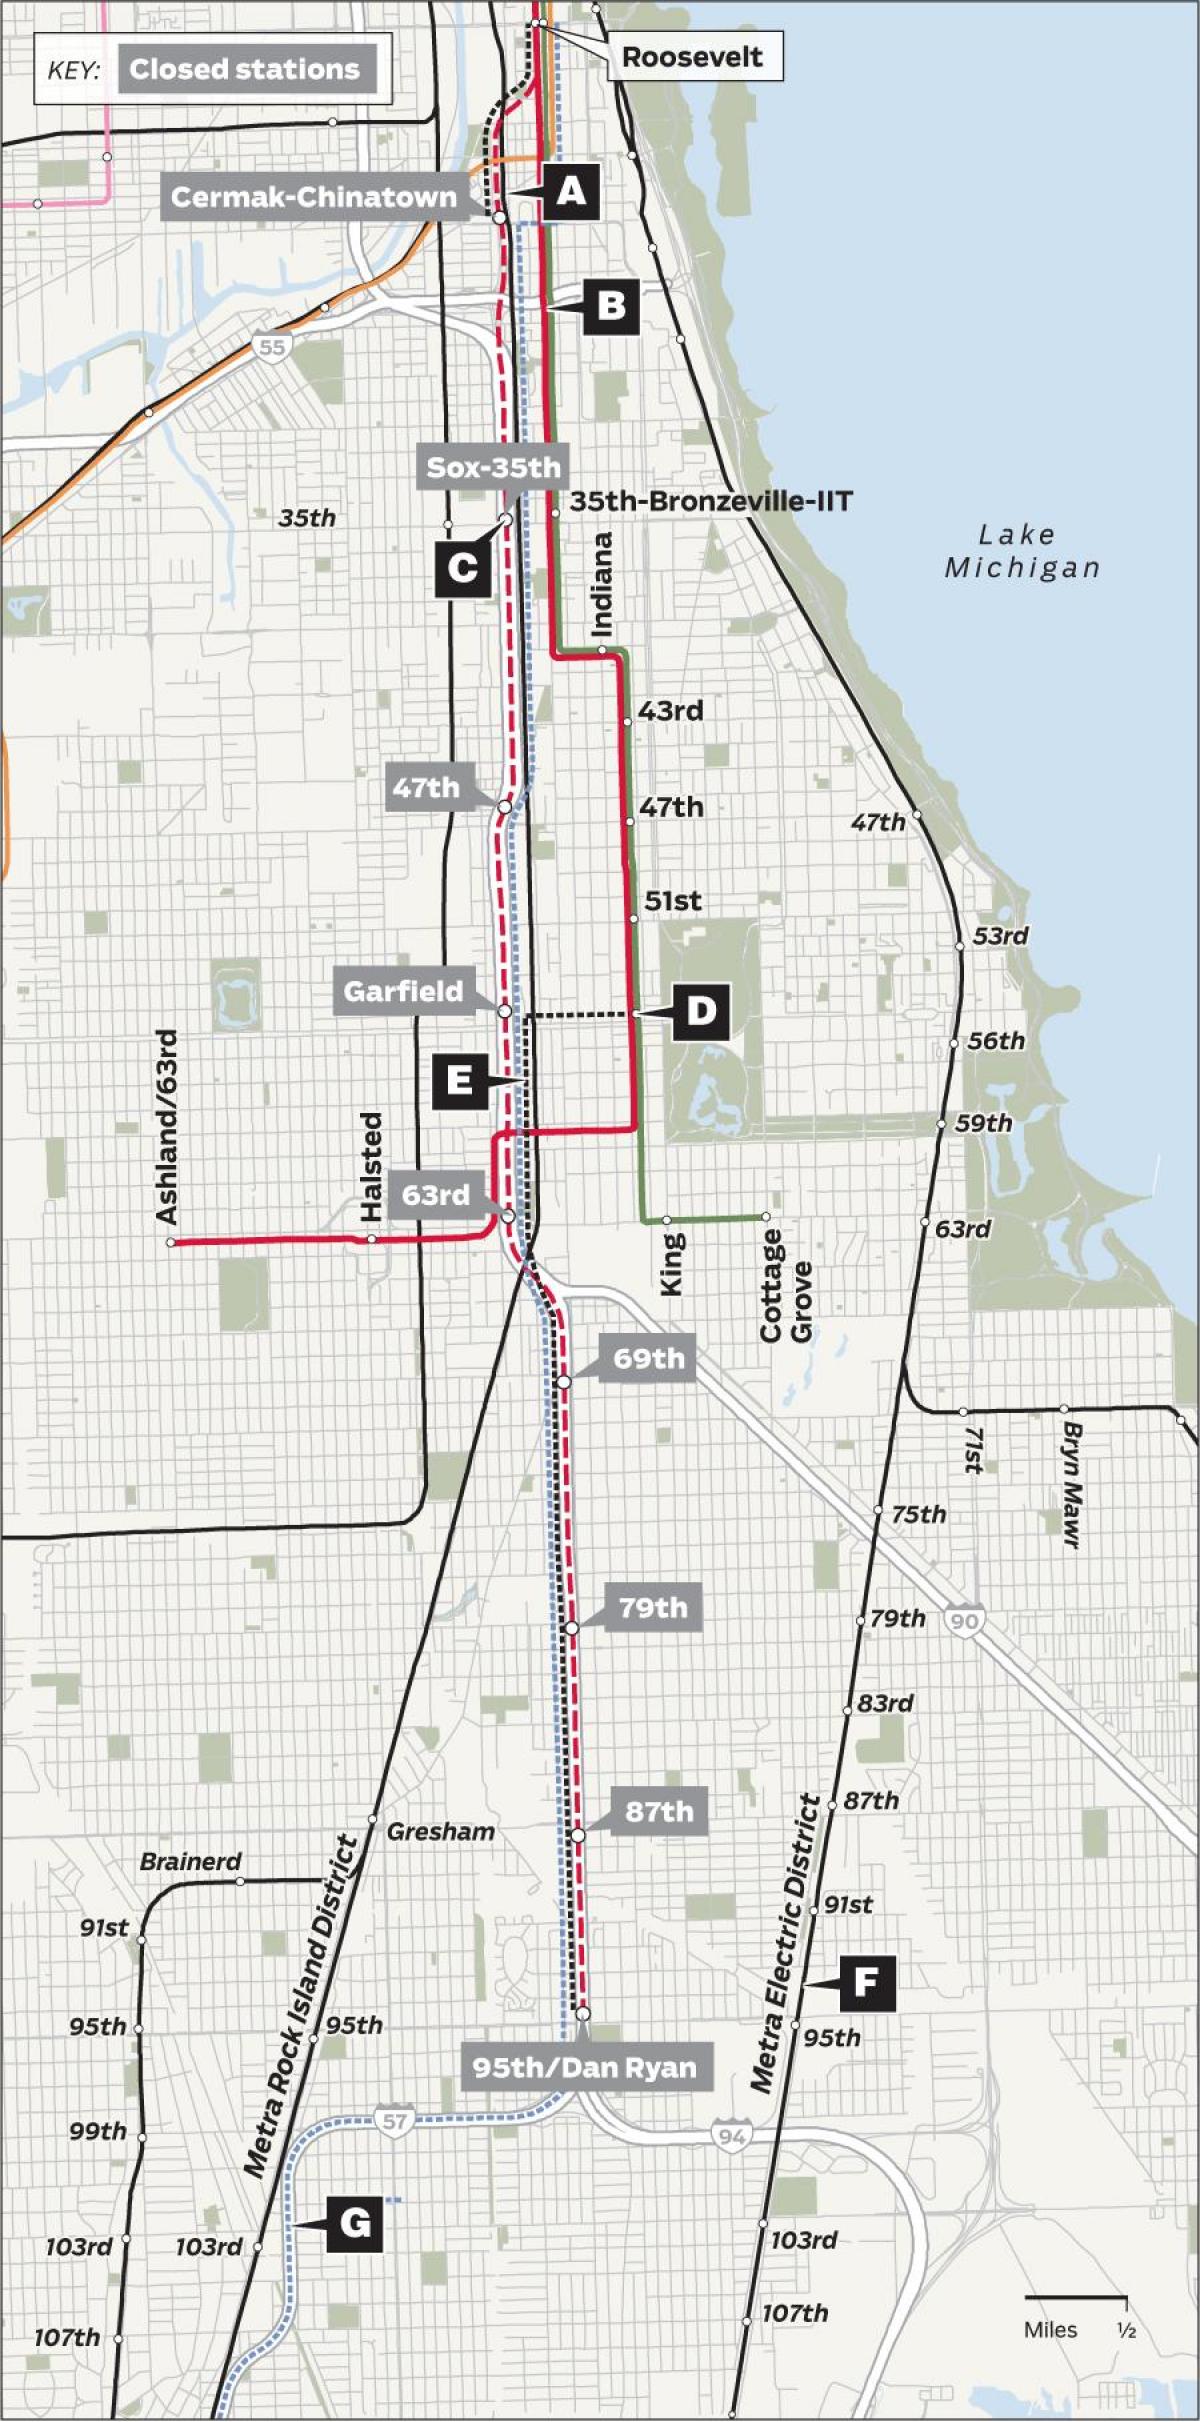 redline Chicago arată hartă